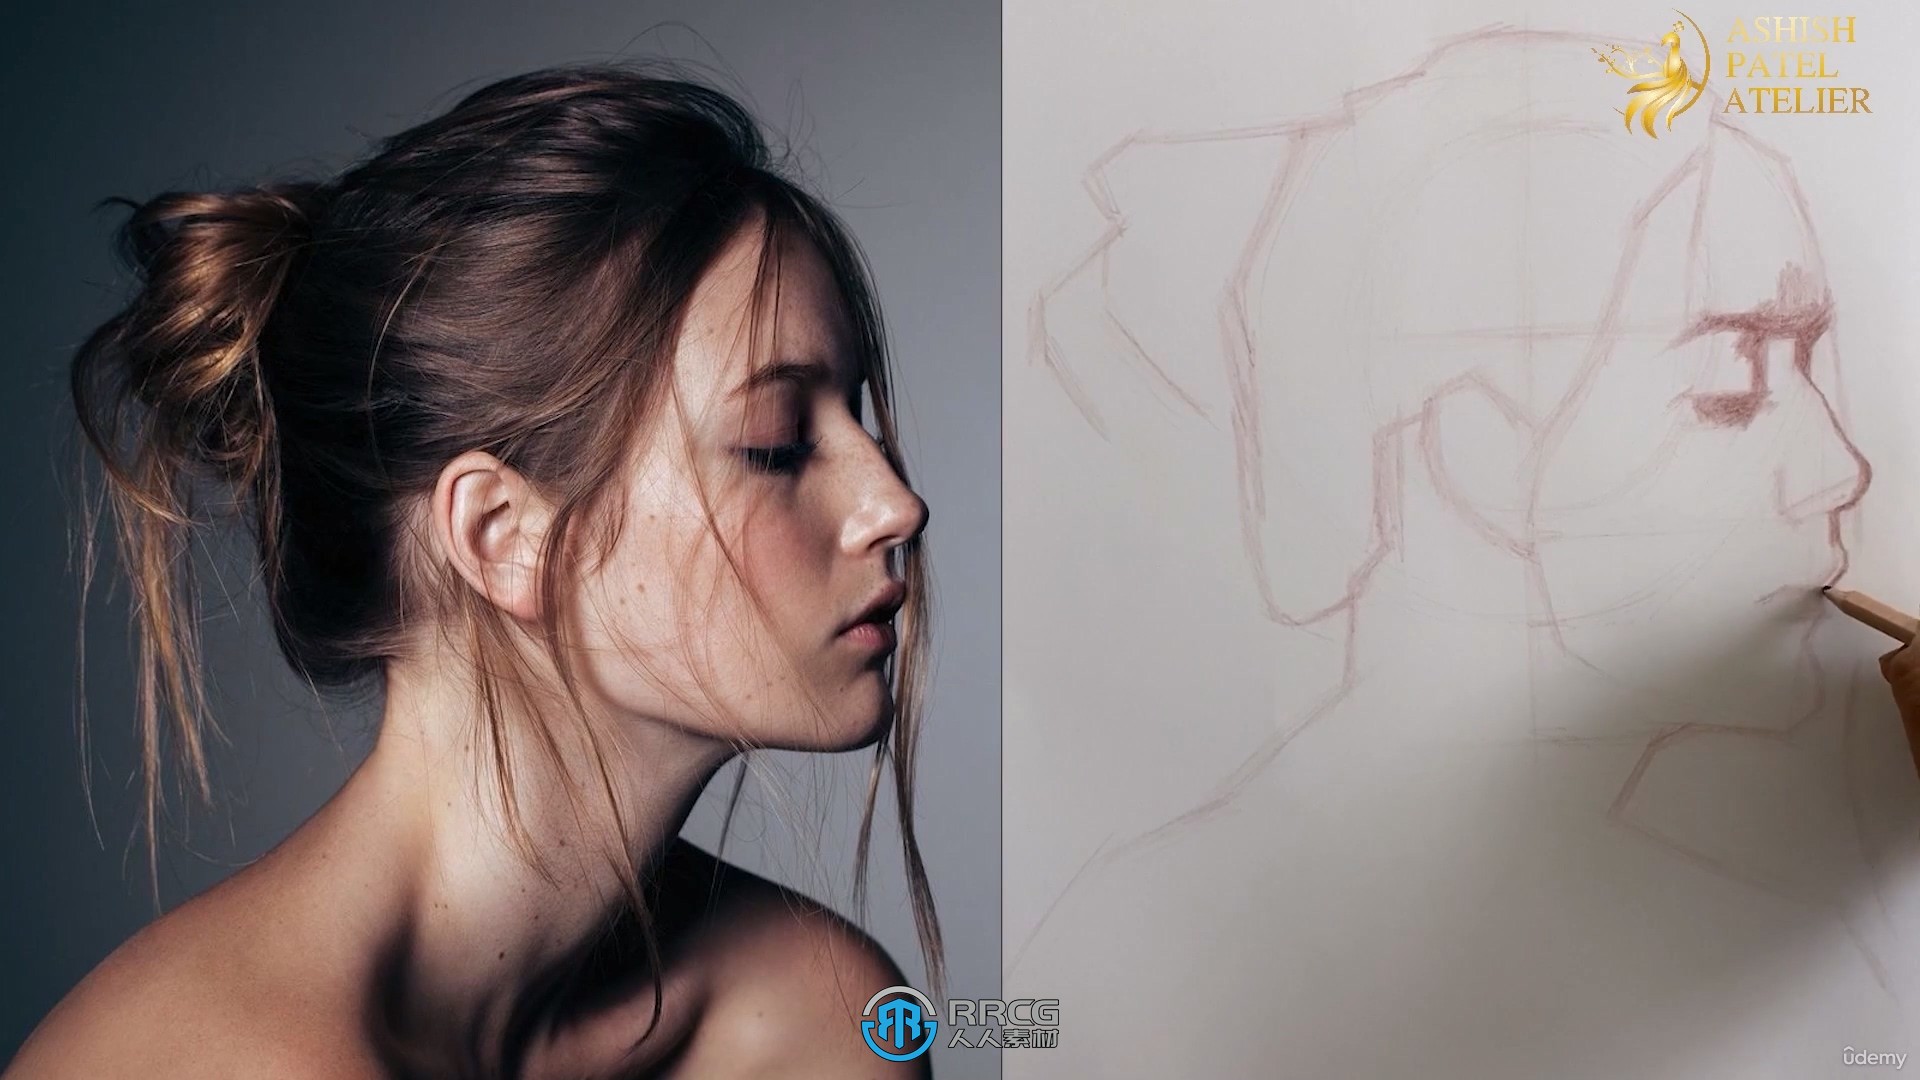 彩色粉笔铅笔绘制人物肖像系列视频教程第二季